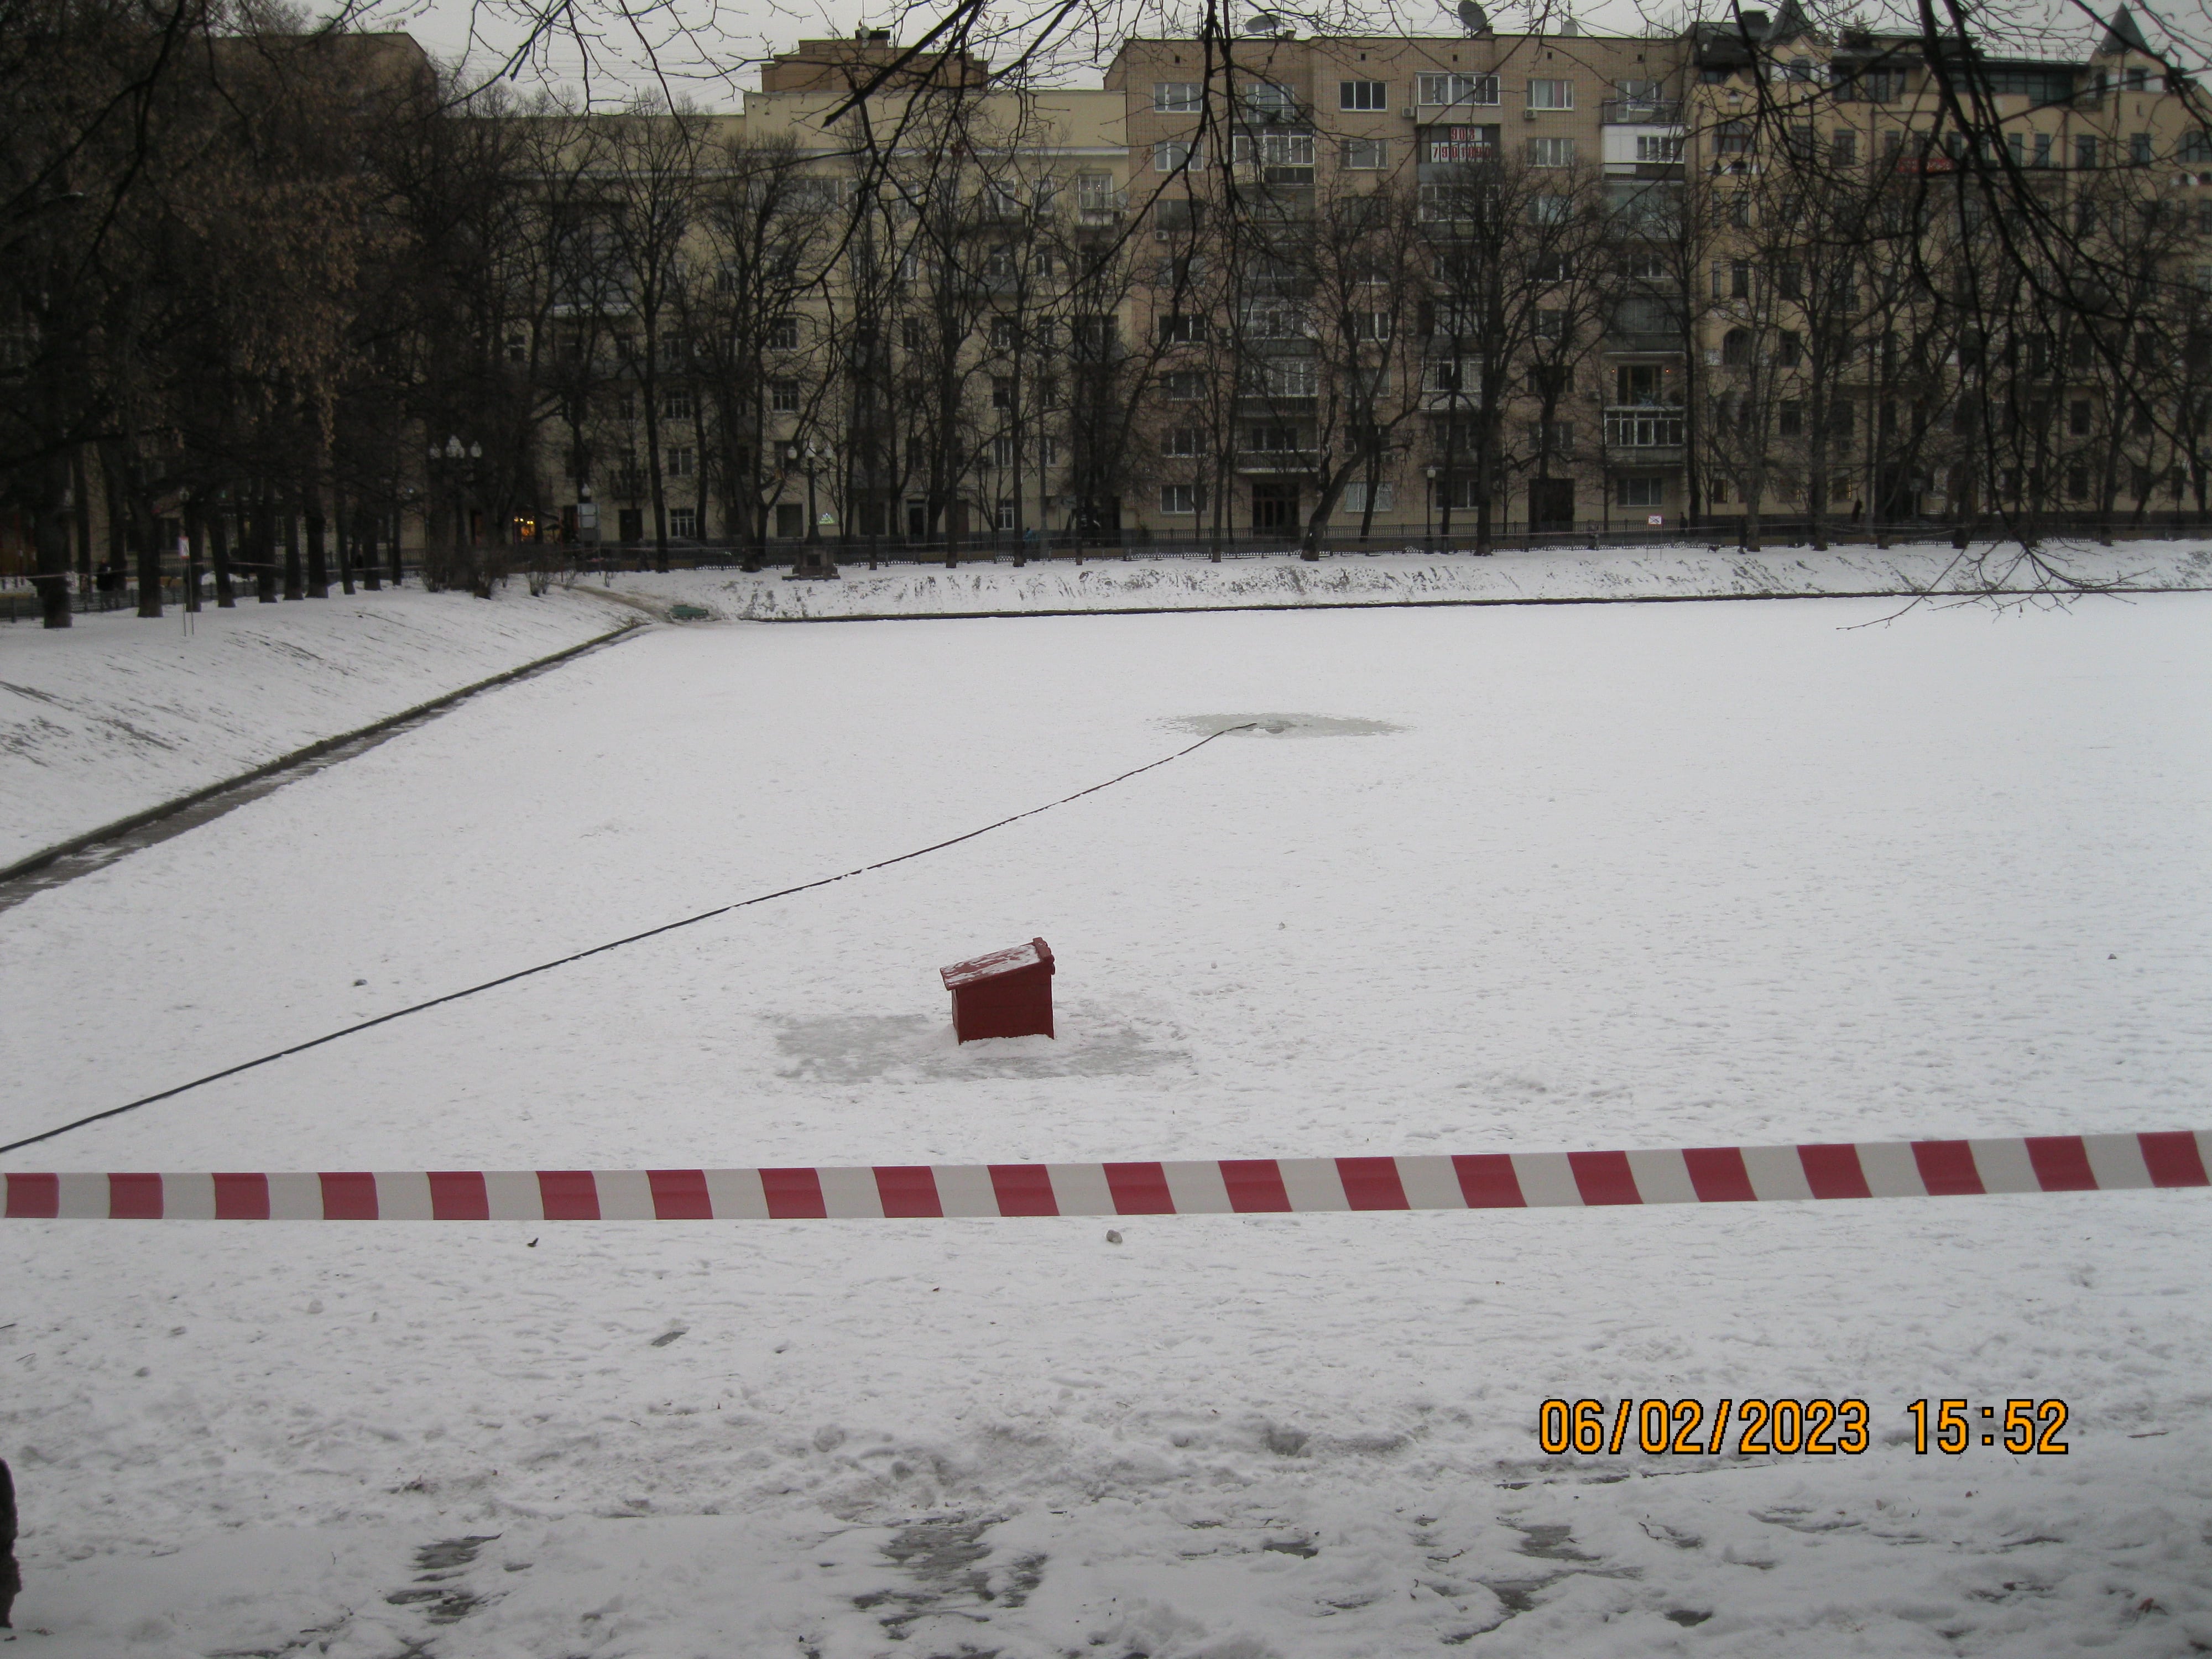 На Патриаршем пруду в центре Москвы работники коммунальных служб сделали прорубь и погрузили туда шланг от компрессора, чтобы насыщать воду кислородом